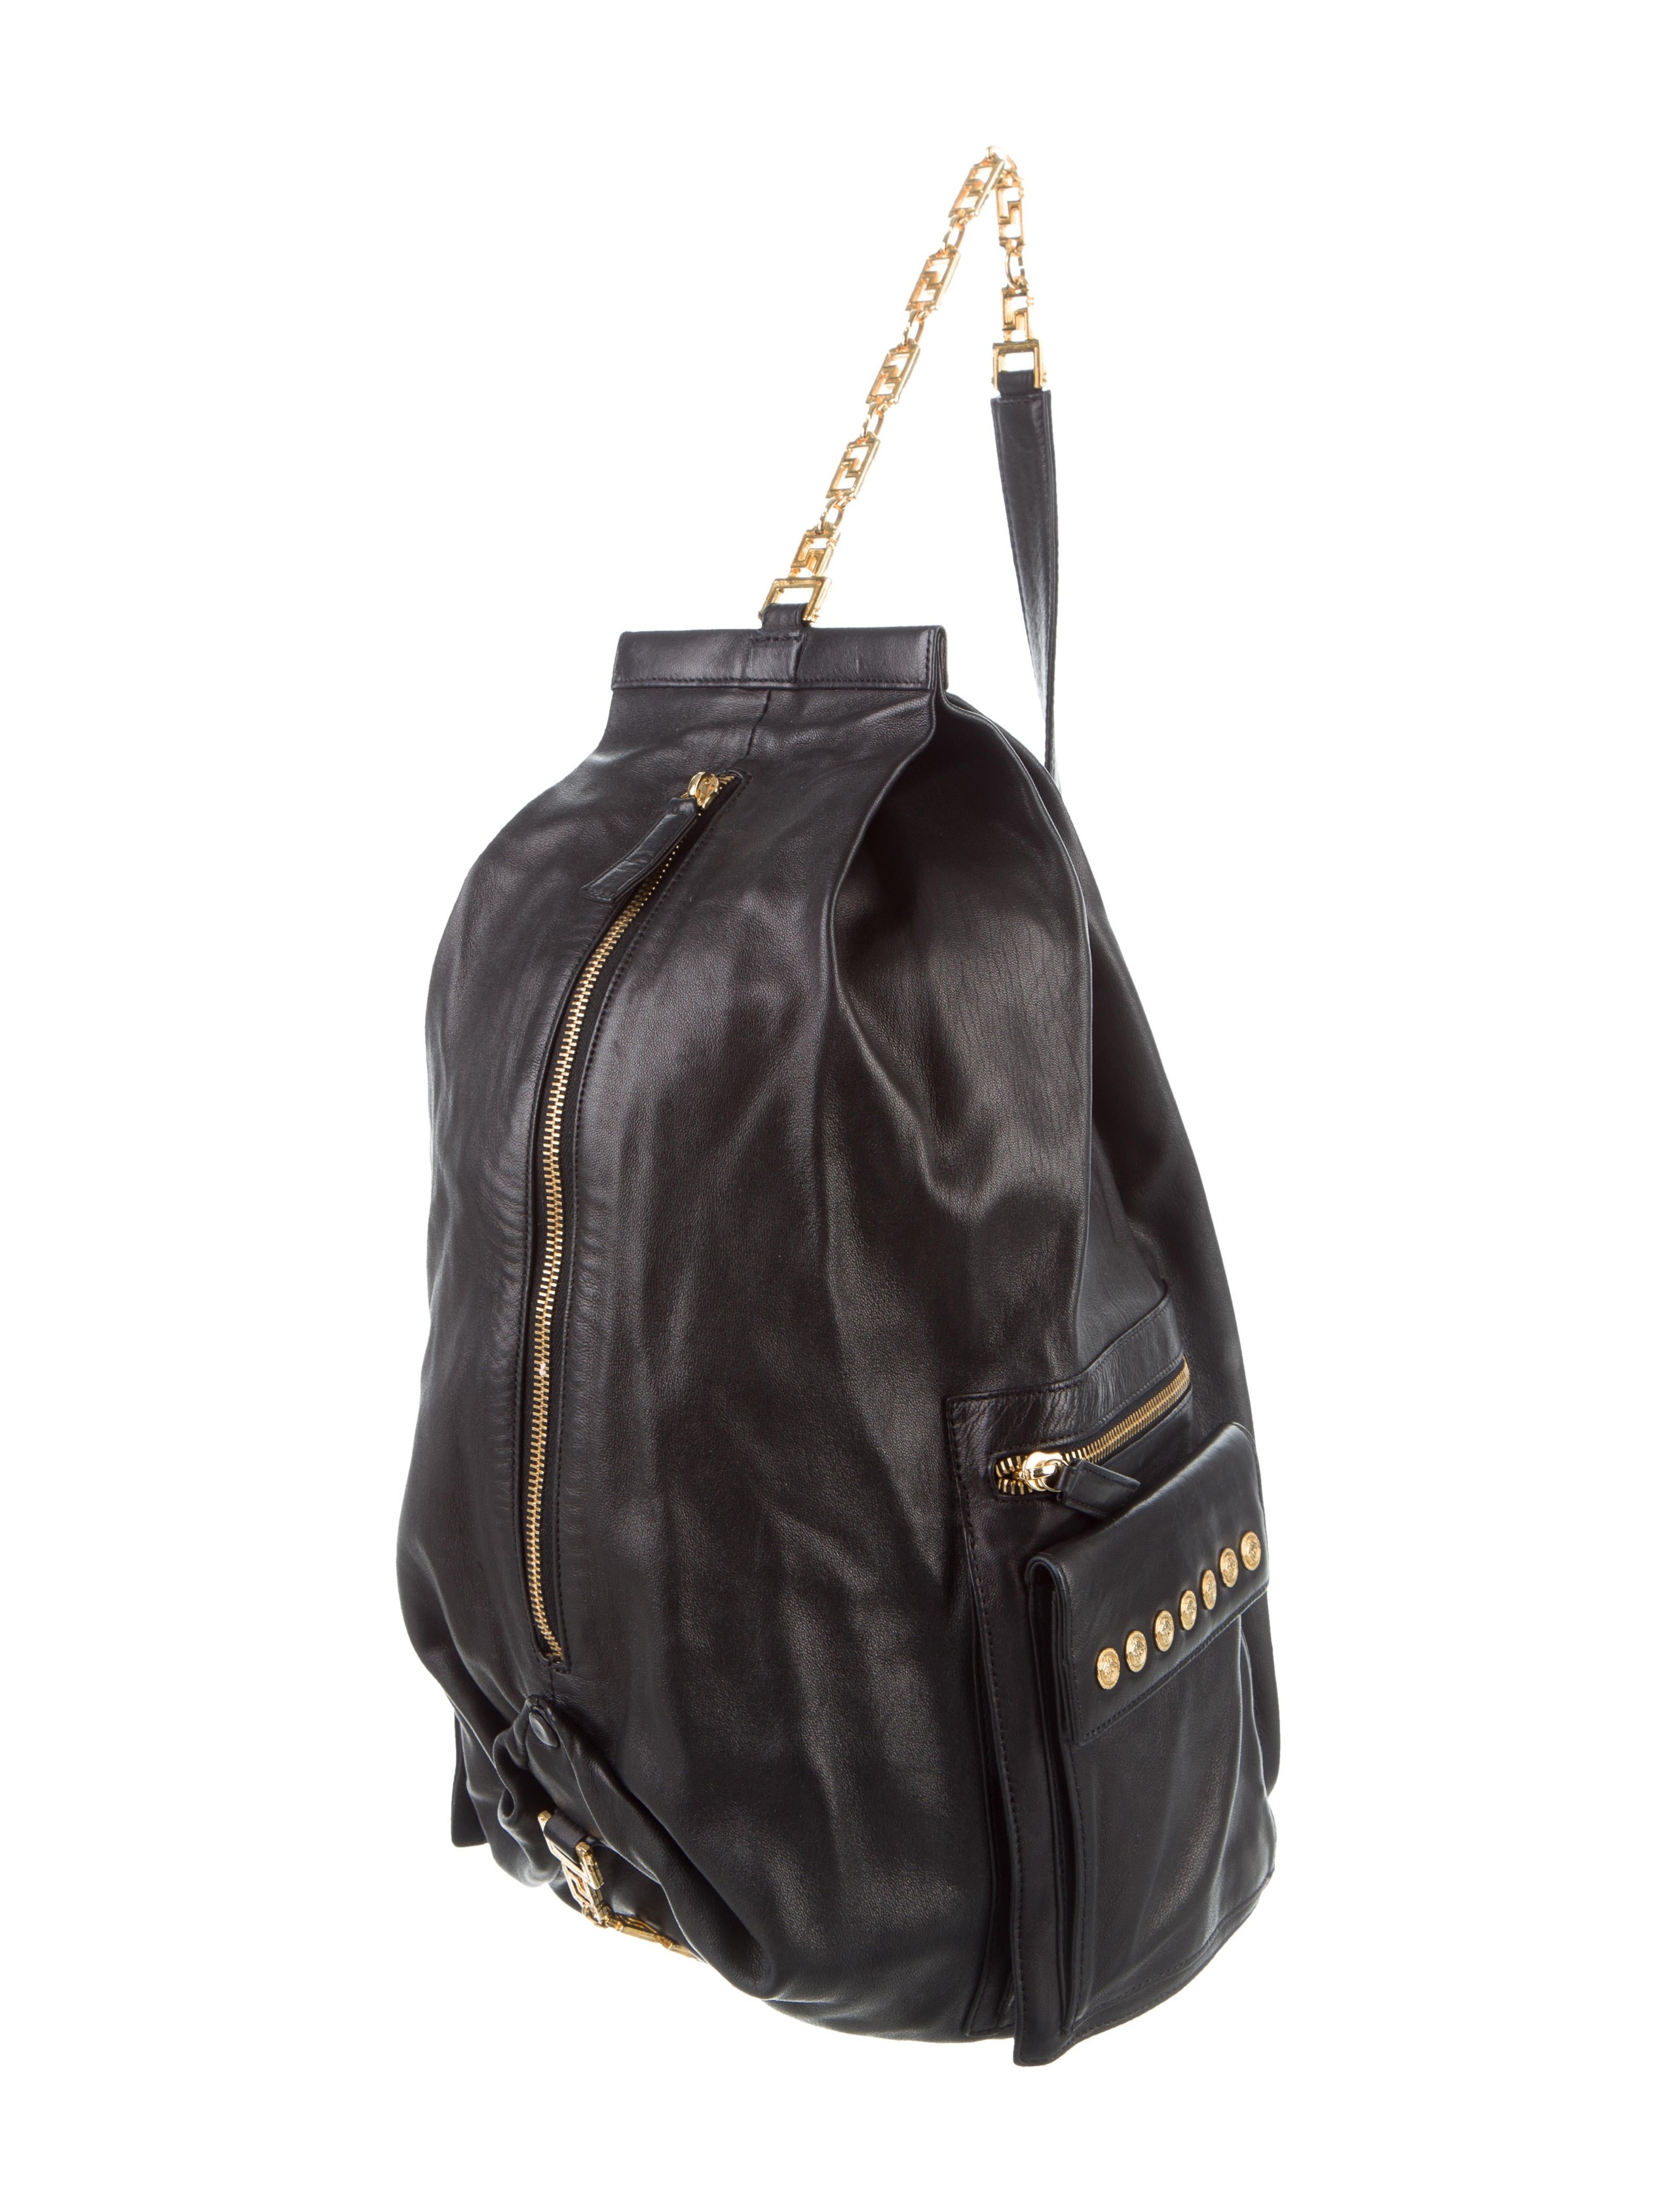 Gianni versace leather sling bag handbags gve20791